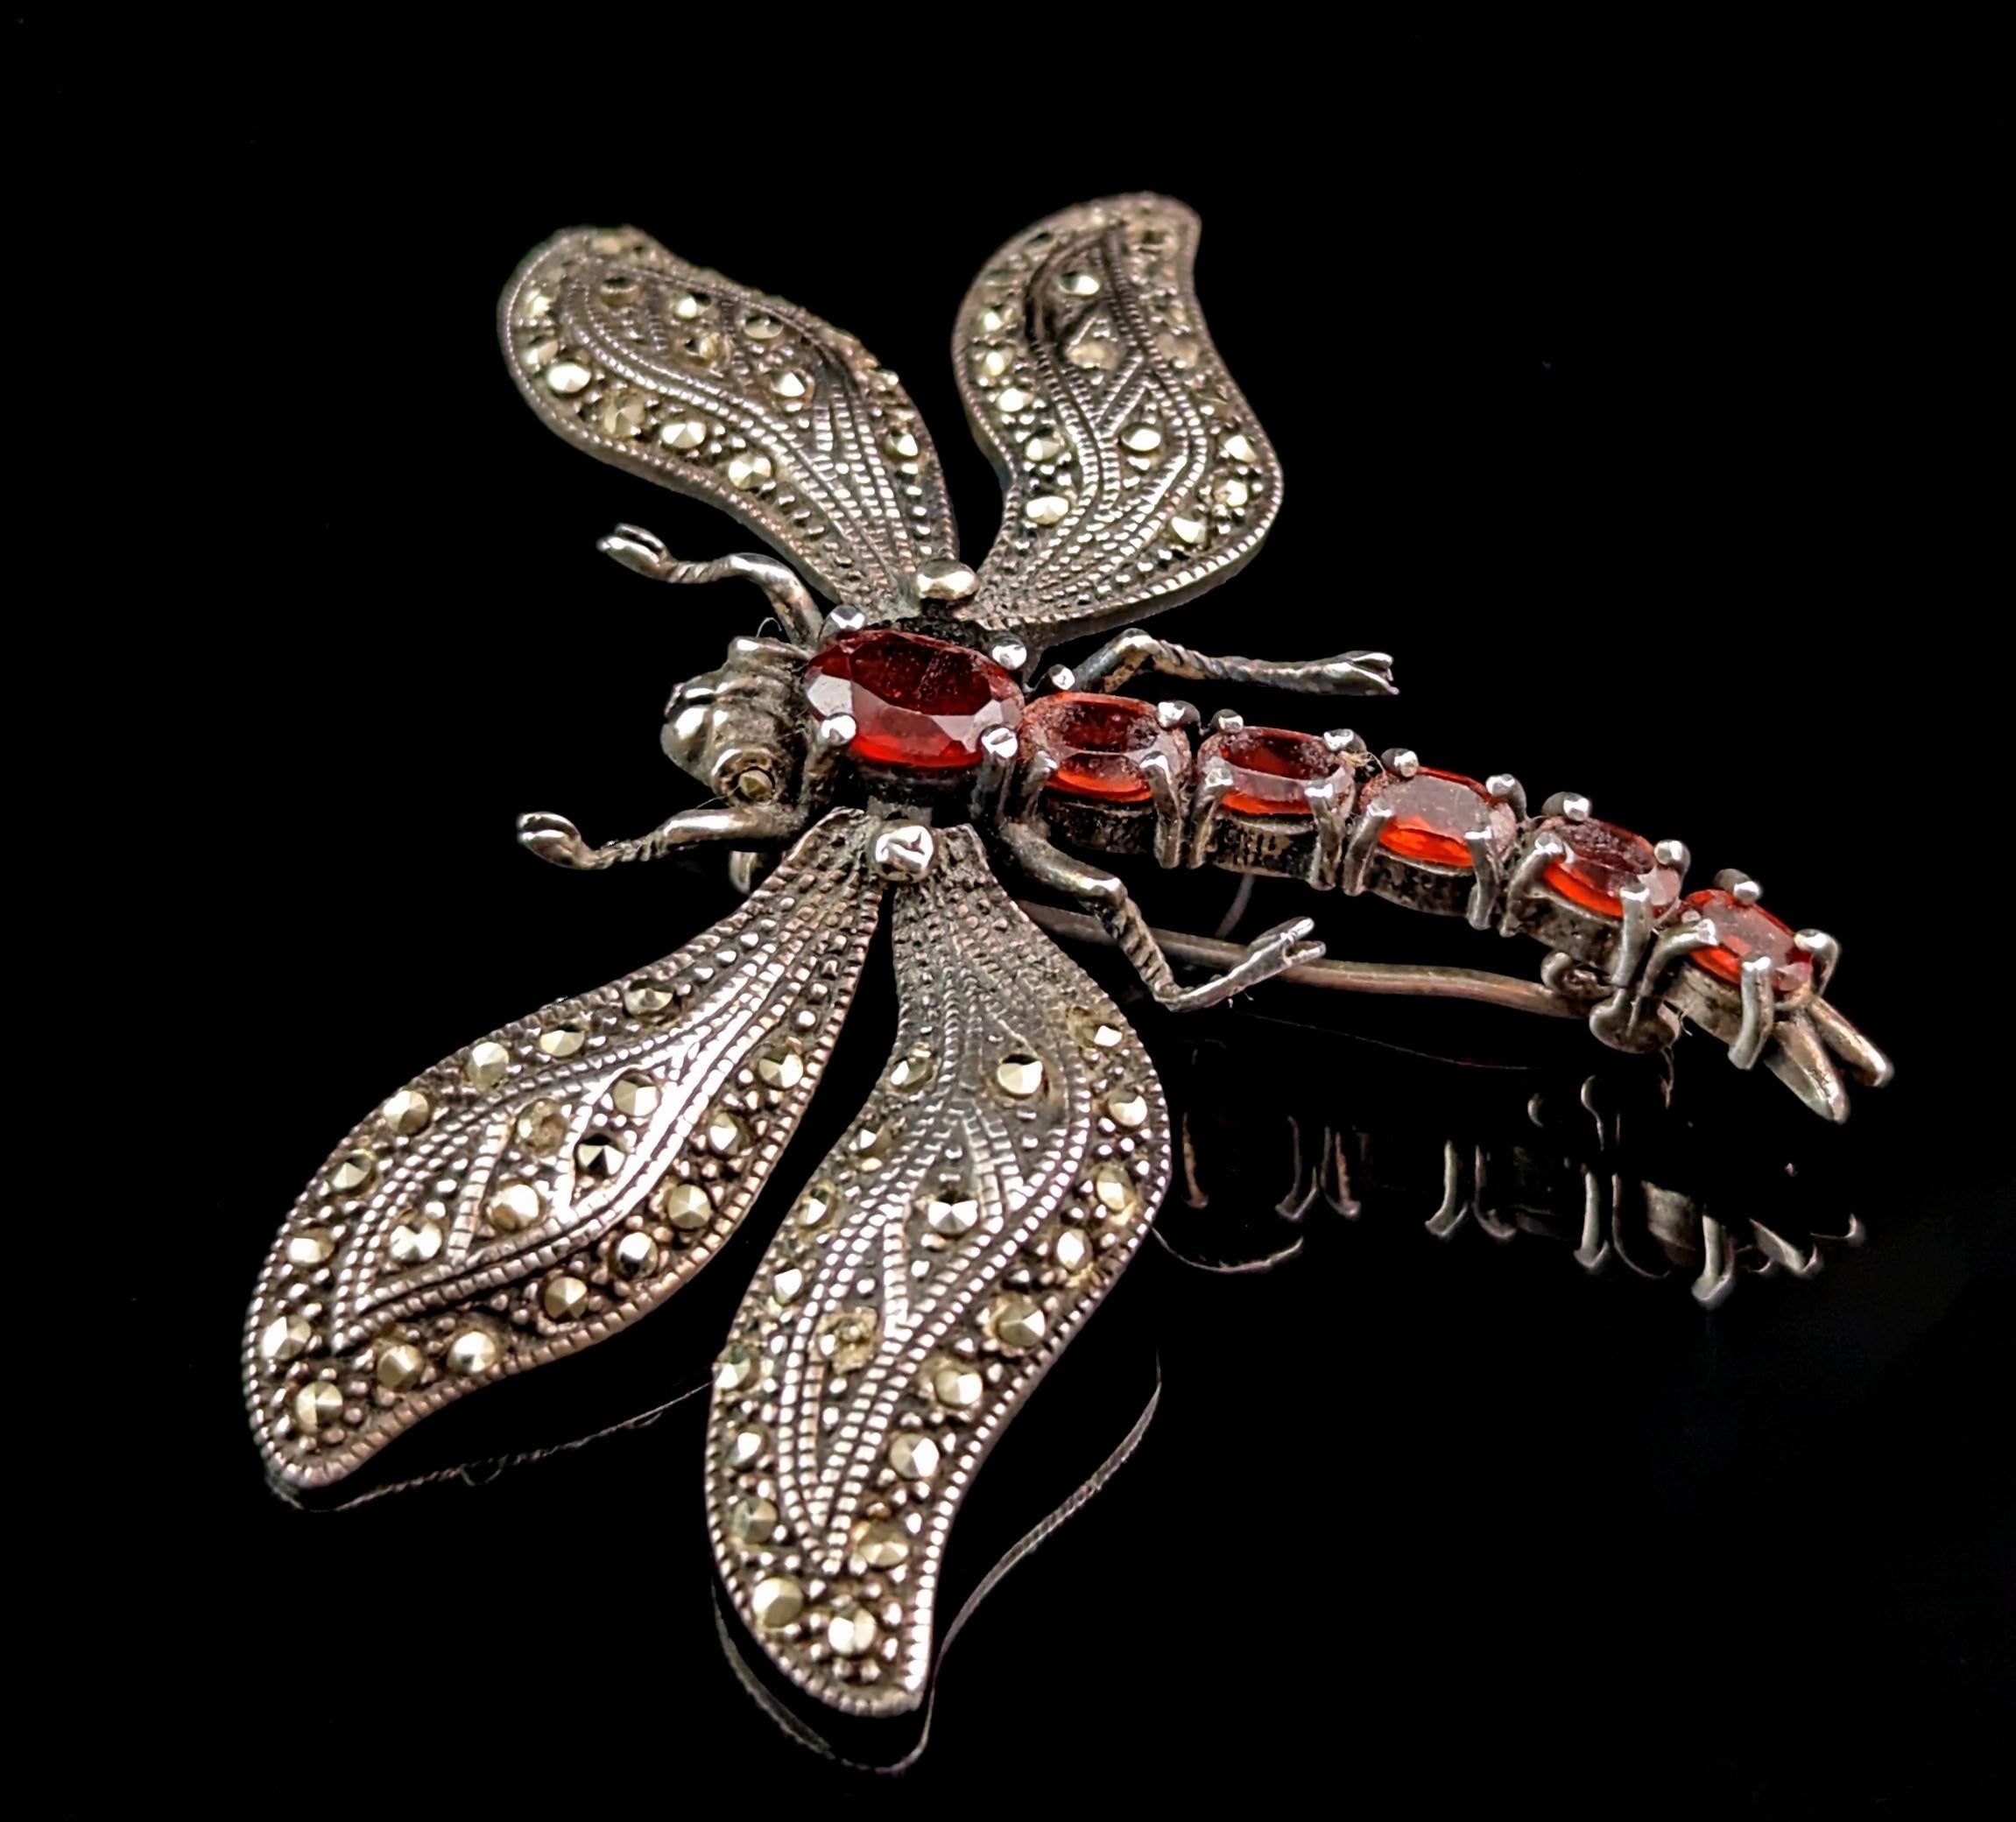 Diese Vintage-Brosche aus Sterlingsilber mit Libelle ist ein wirklich auffälliges Stück.

Es ist eine große Brosche, die auf viele Arten getragen werden kann, und die Flügel sind leicht beweglich, so dass sie sich etwas bewegen können.

Die Flügel